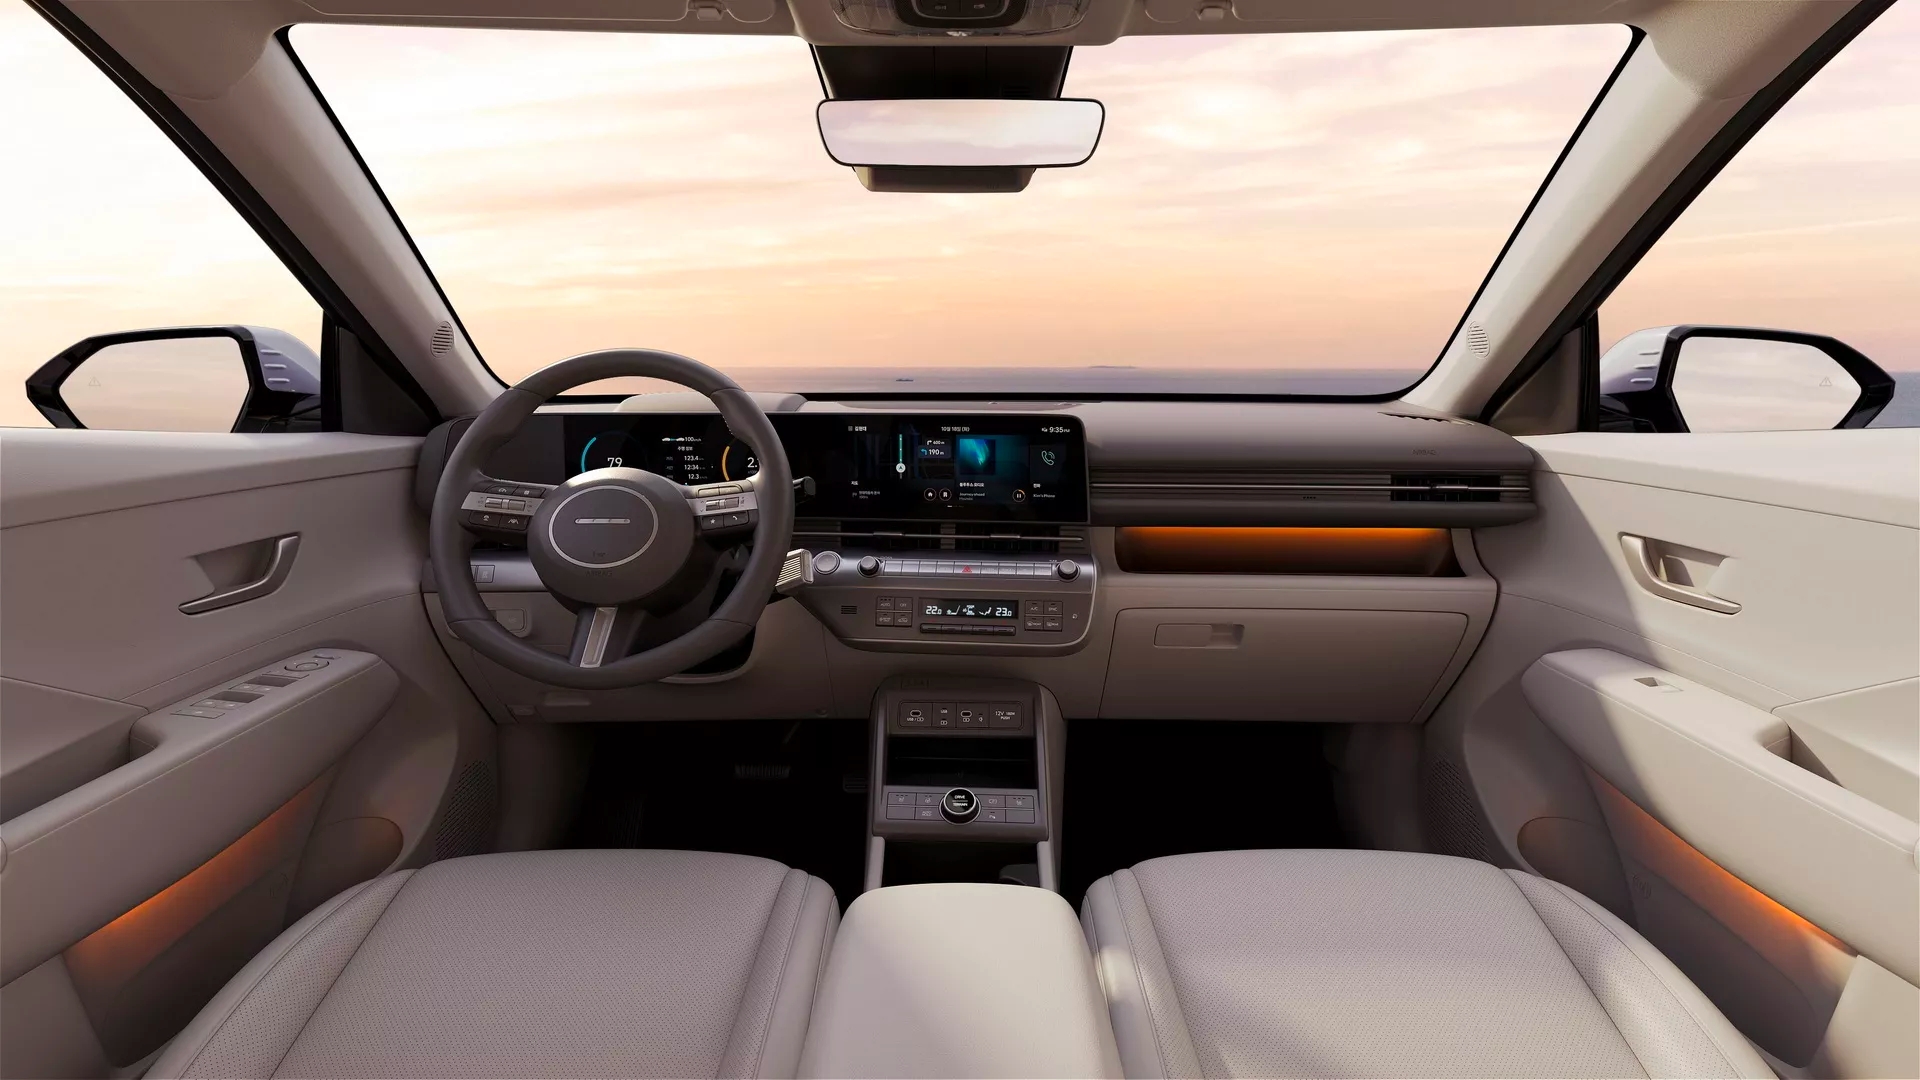 El interior del Hyundai Kona muestra un diseño en línea con la de los últimos lanzamientos de la marca.